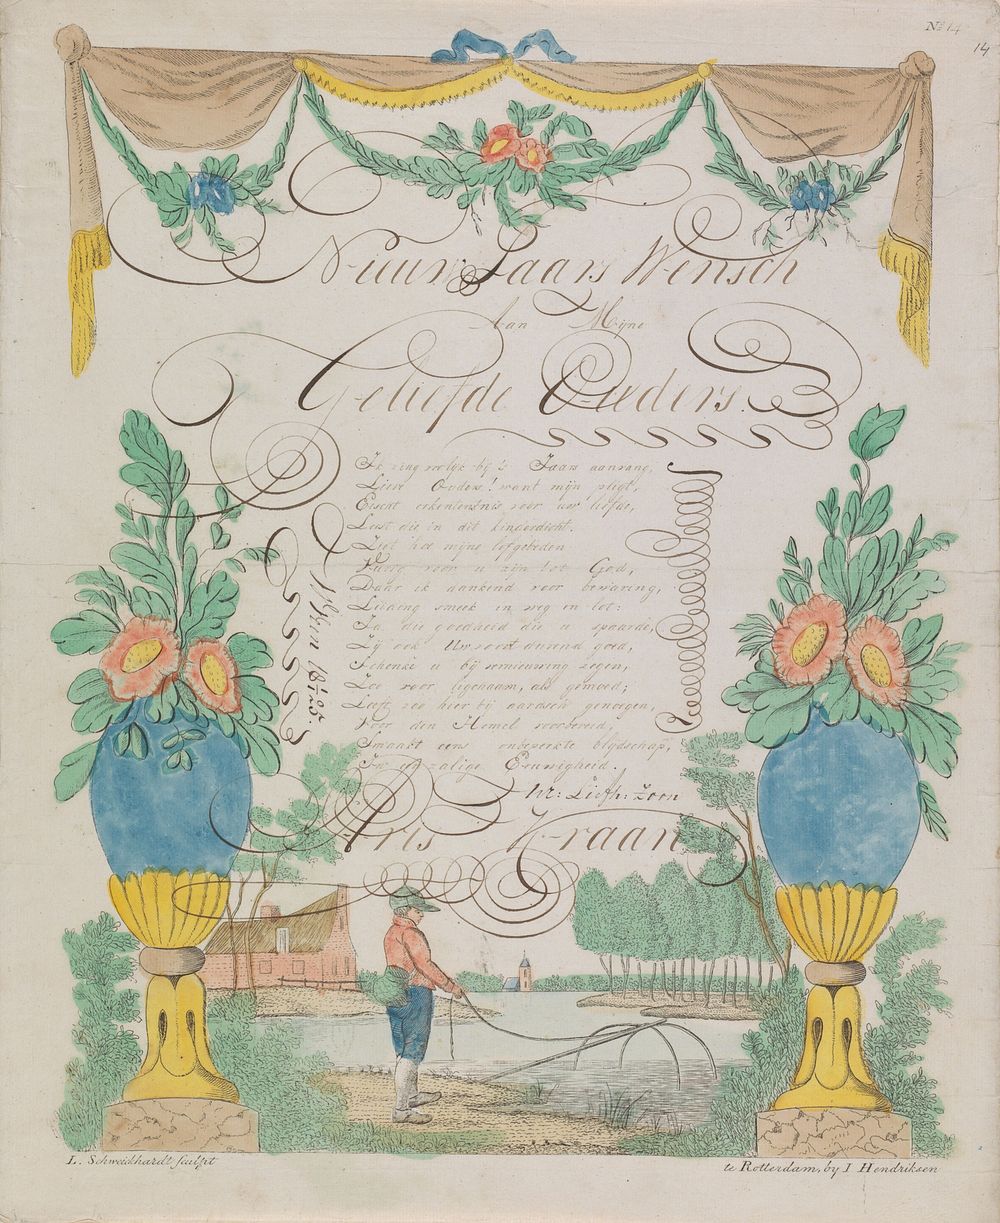 Wensbrief met visser en bloemenvazen (1825) by Leonardus Schweickhardt and Jan Hendriksen